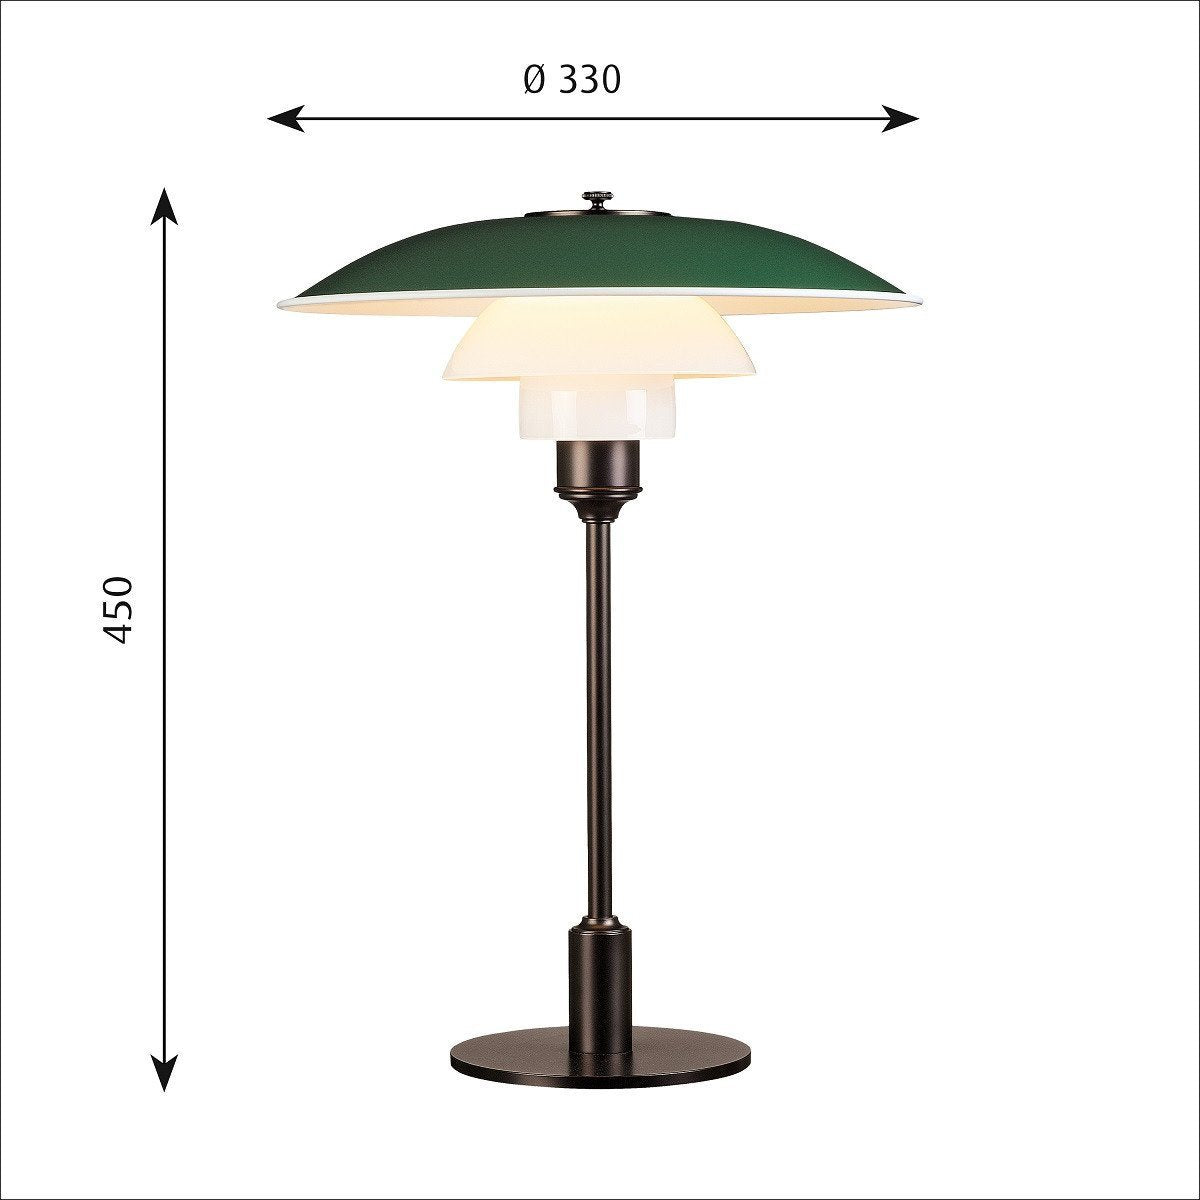 Louis Poulsen Ph 3 1/2 2 1/2 Table Lamp, Green